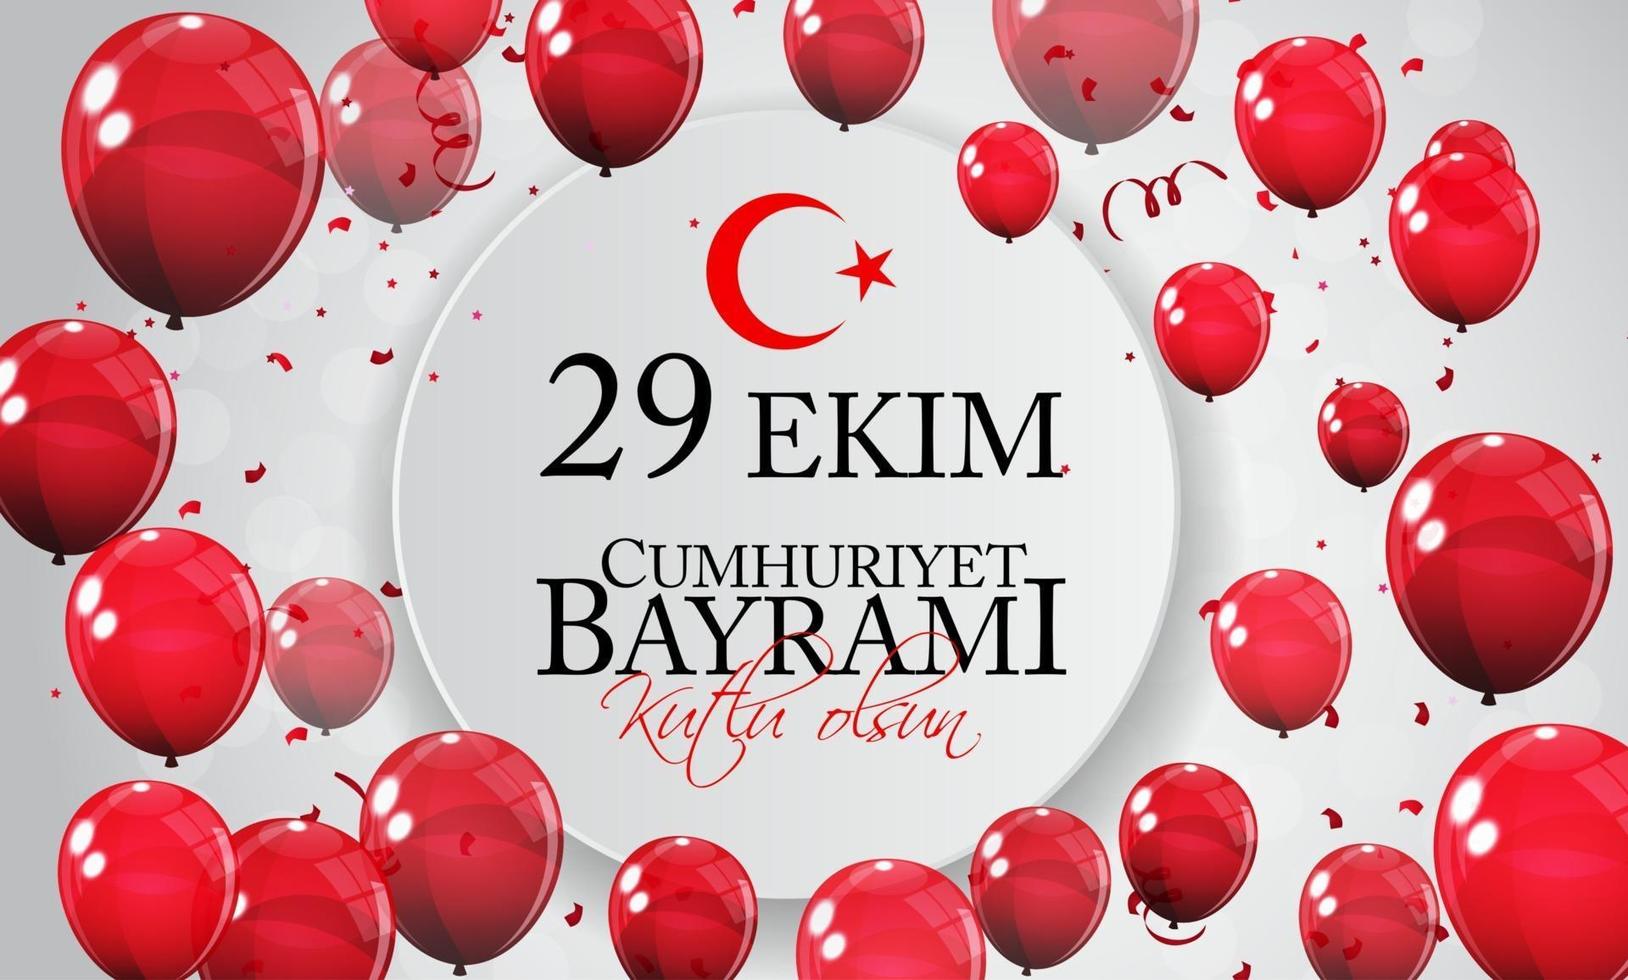 29 ekim cumhuriyet bayrami kutlu olsun. traduction 29 octobre jour de la république turquie et fête nationale en turquie, joyeuses fêtes vecteur